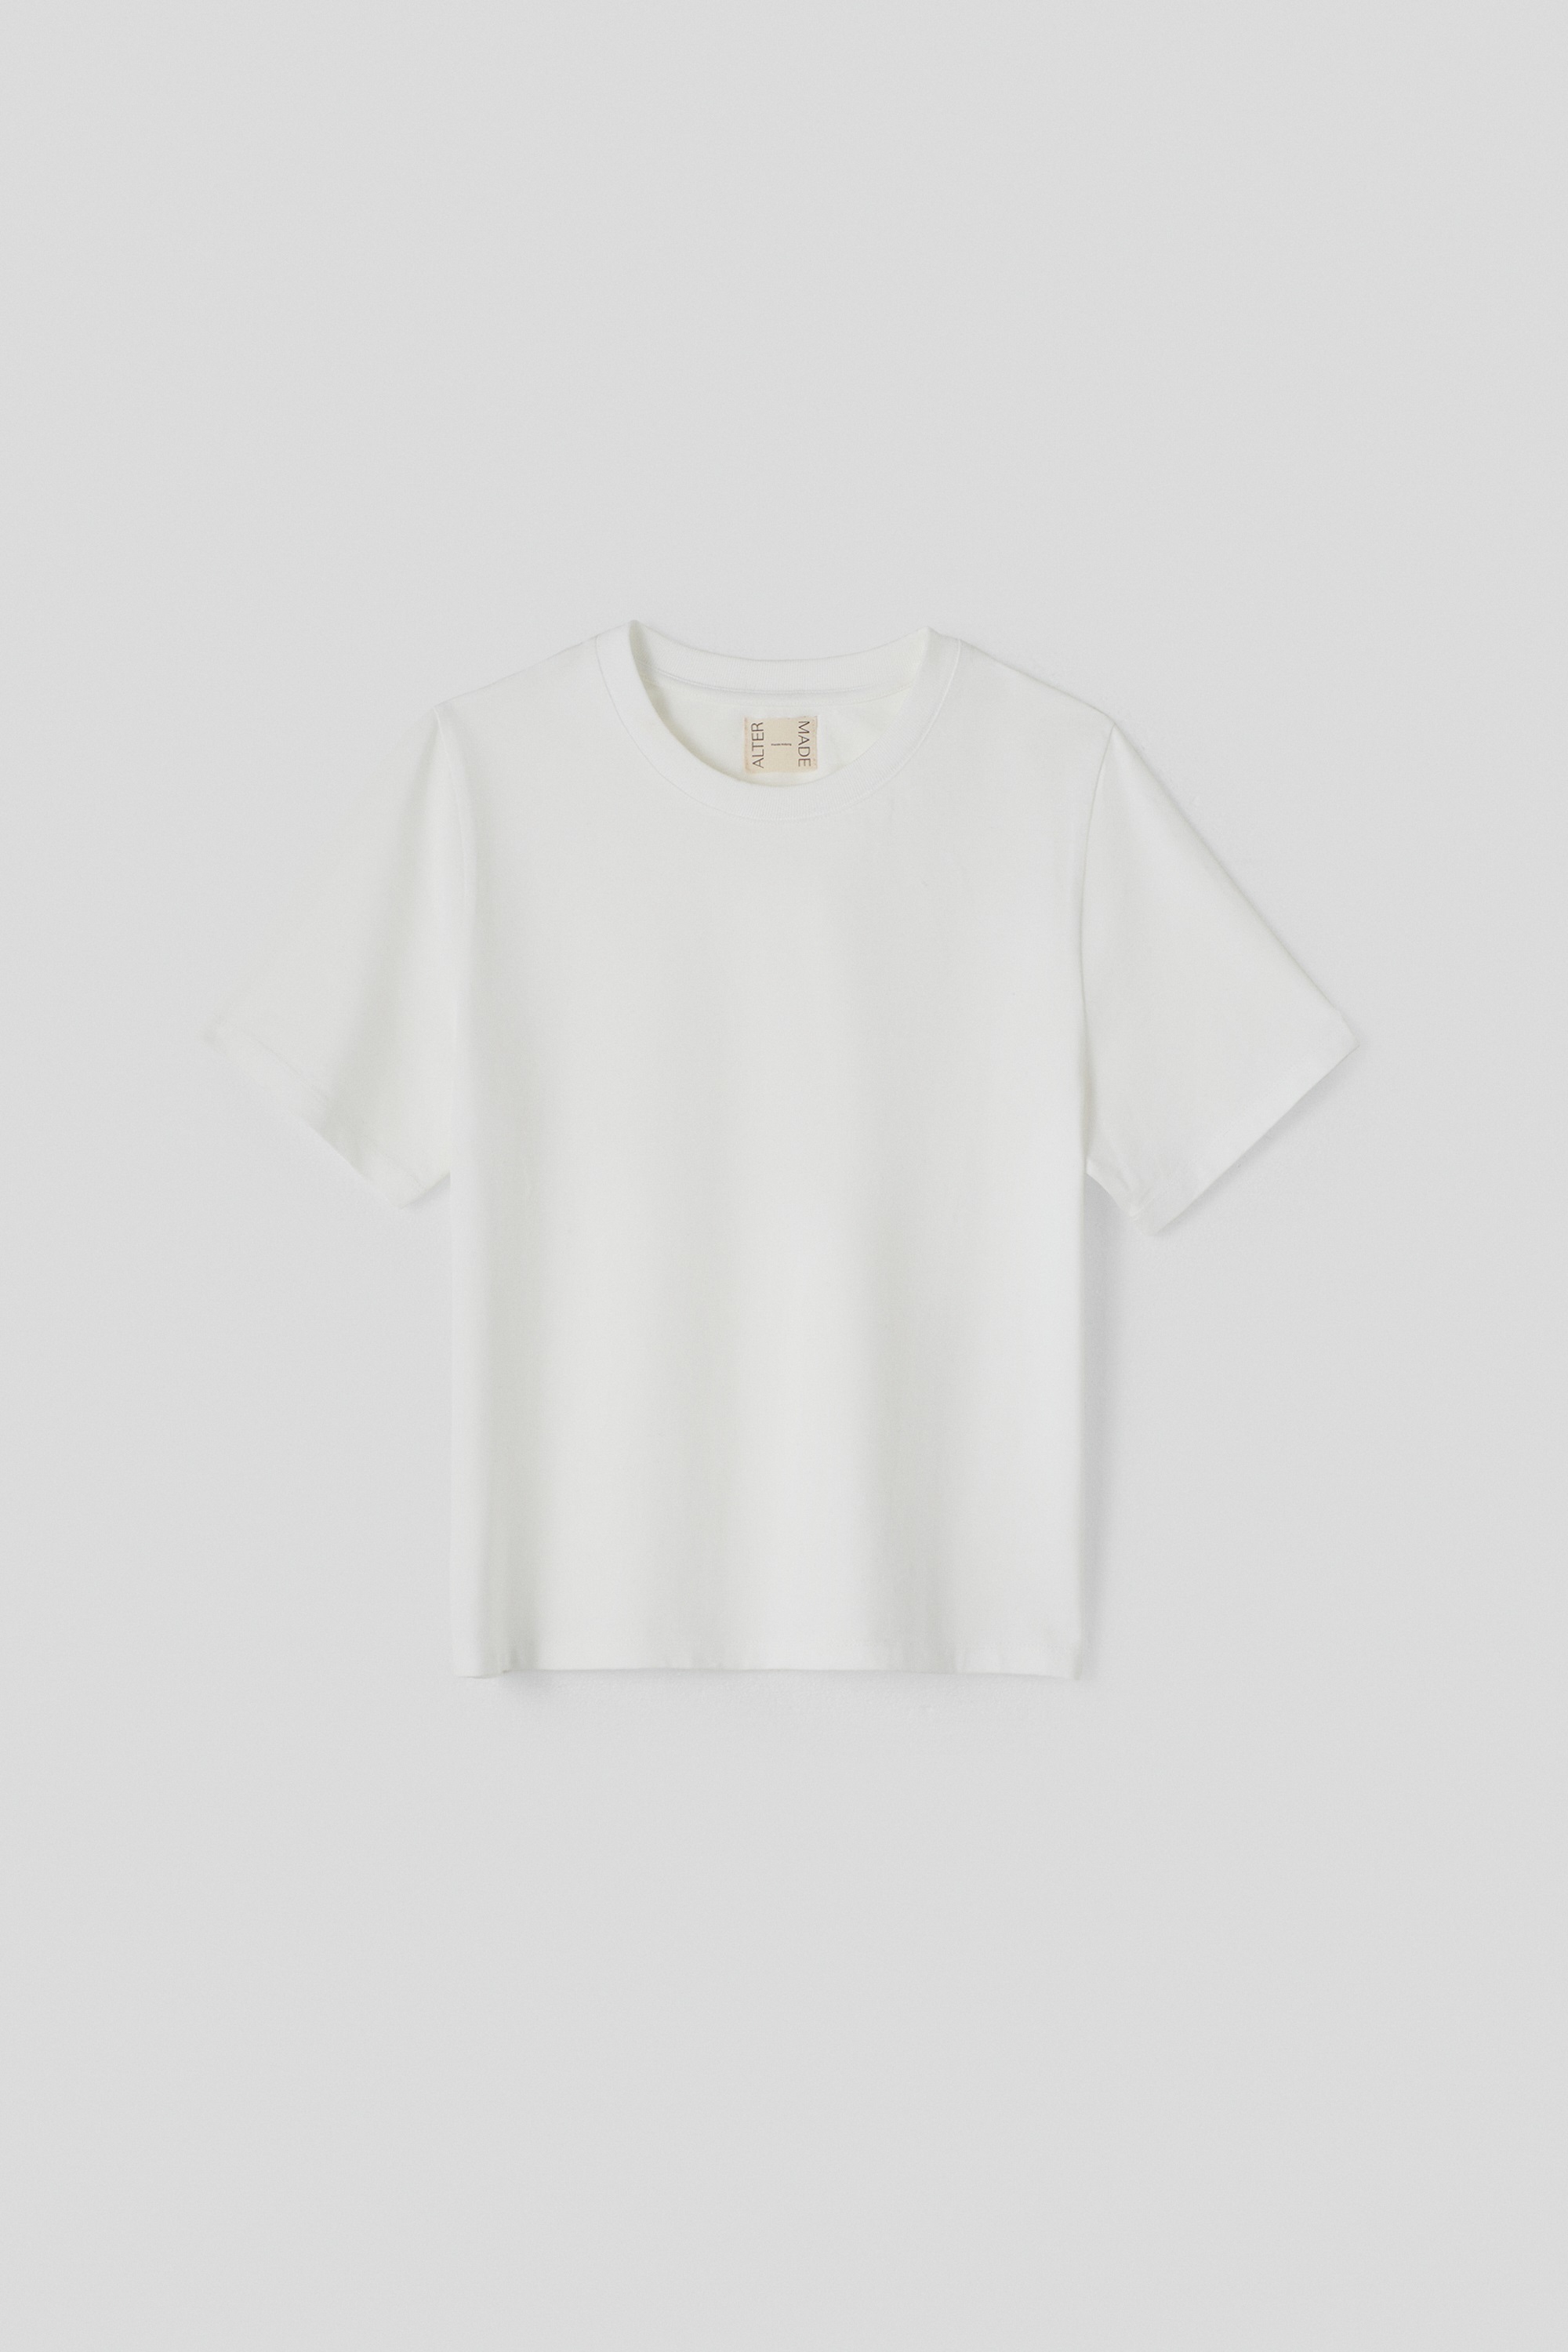 Una camiseta blanca básica de Alter Made.